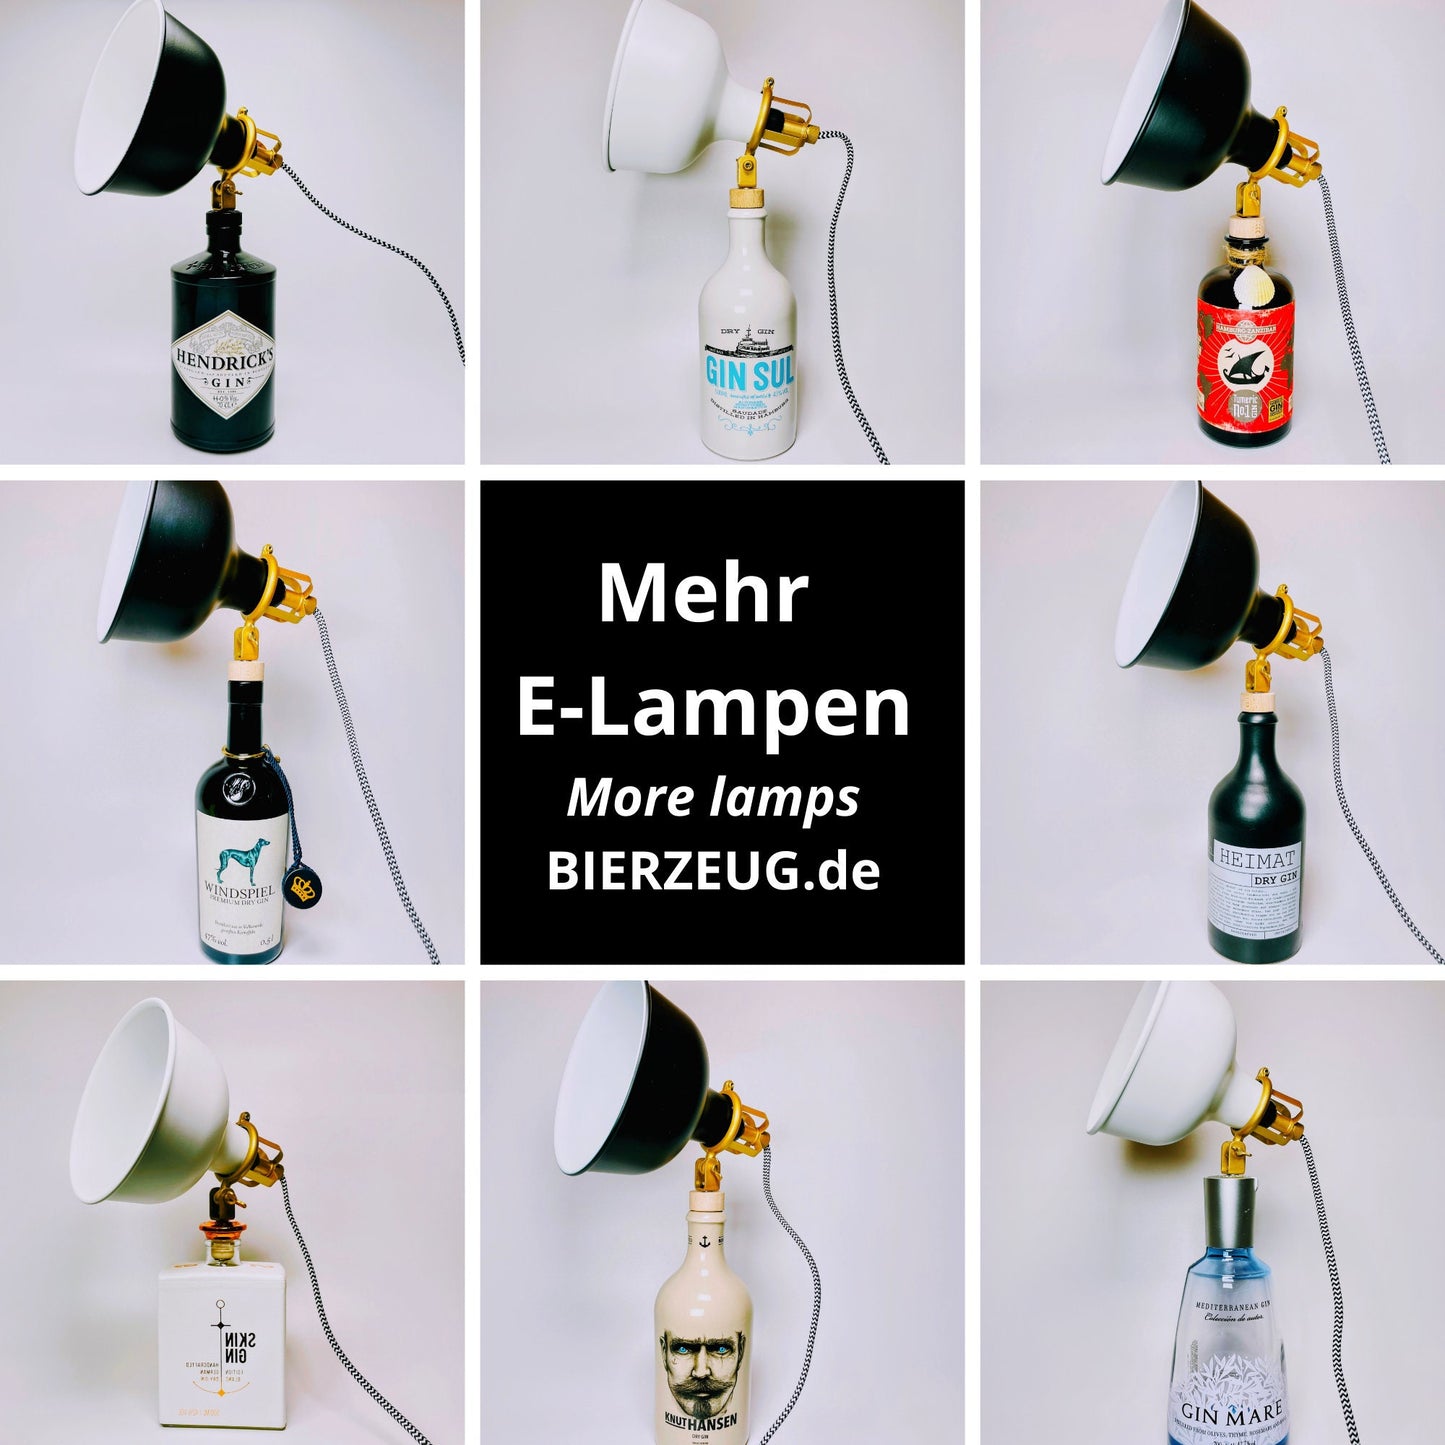 Monkey47 Gin Vintage-Lampe | Handgemachte nachhaltige Tischlampe aus Monkey 47 Gin | Einzigartige Geschenkidee | Deko-Licht | Upcycling